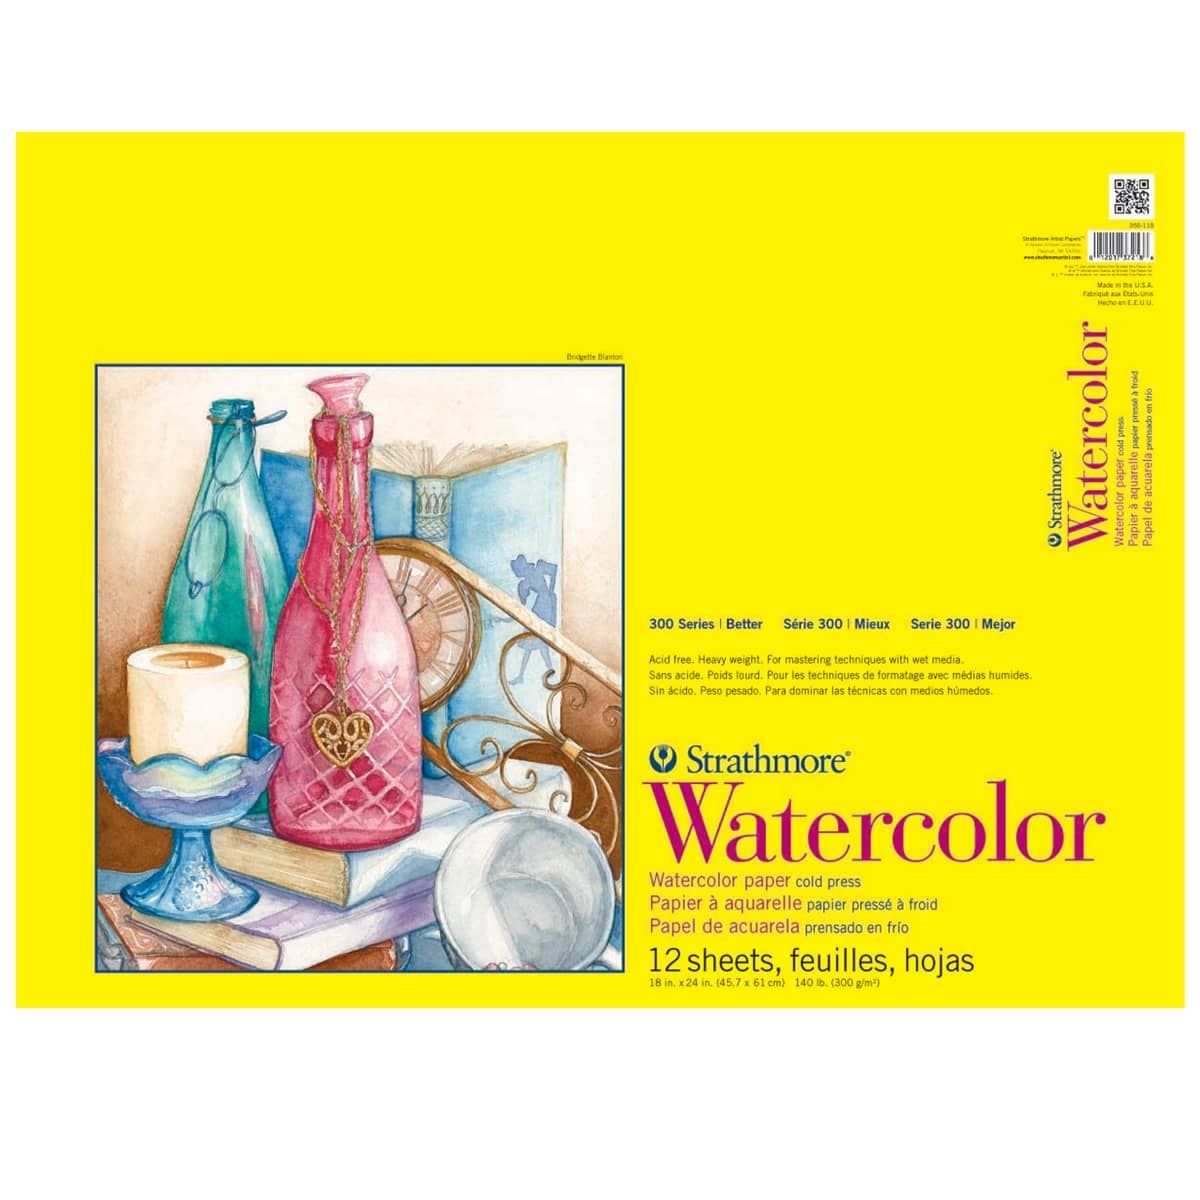 Strathmore 300 Series 140lb. Watercolor Paper Pads